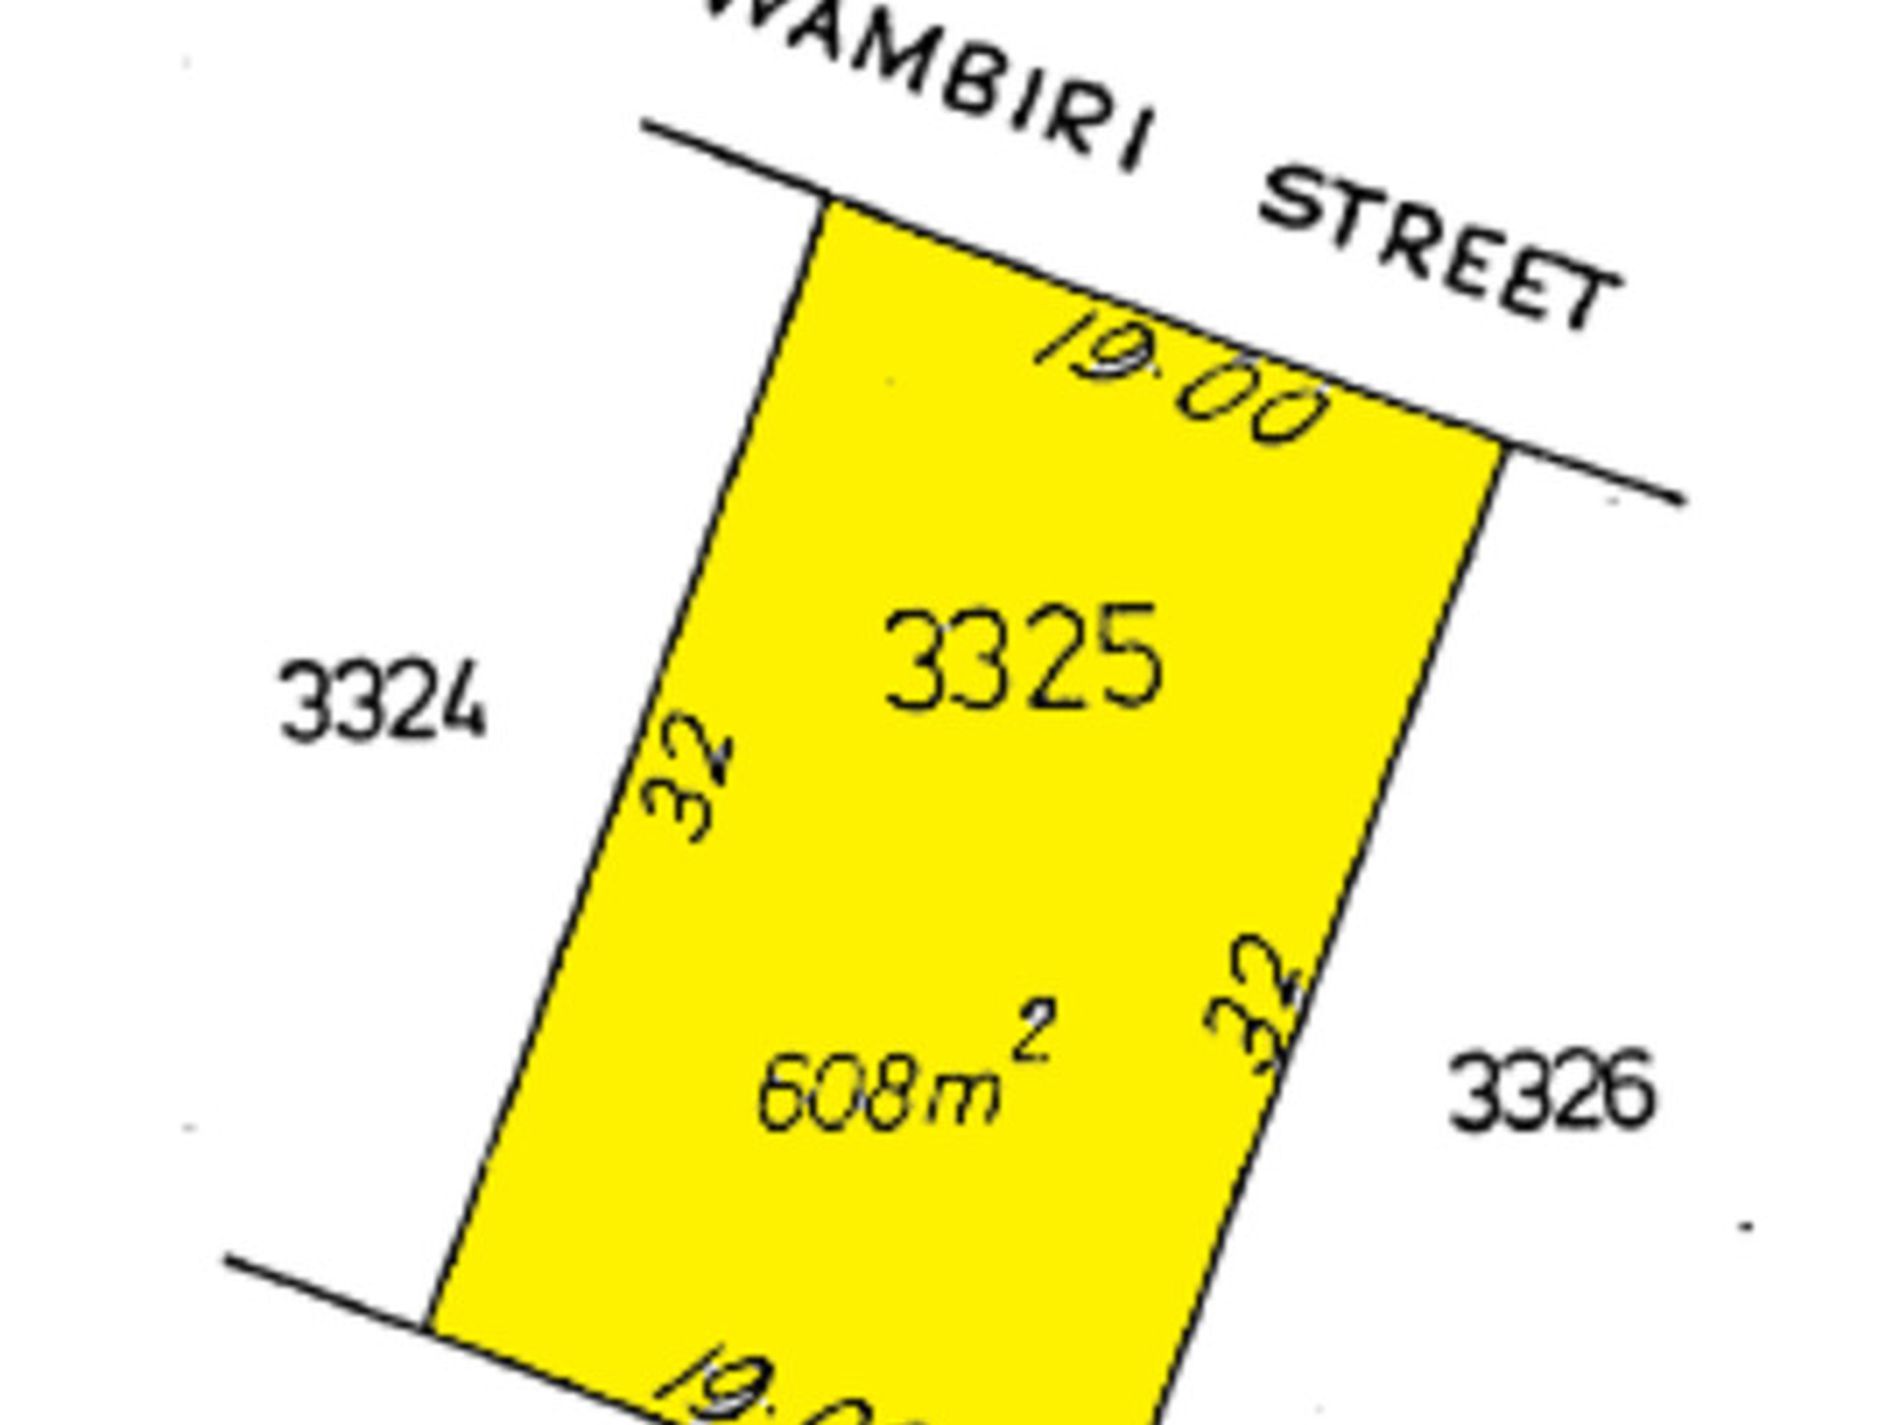 11 Wambiri Street, South Hedland